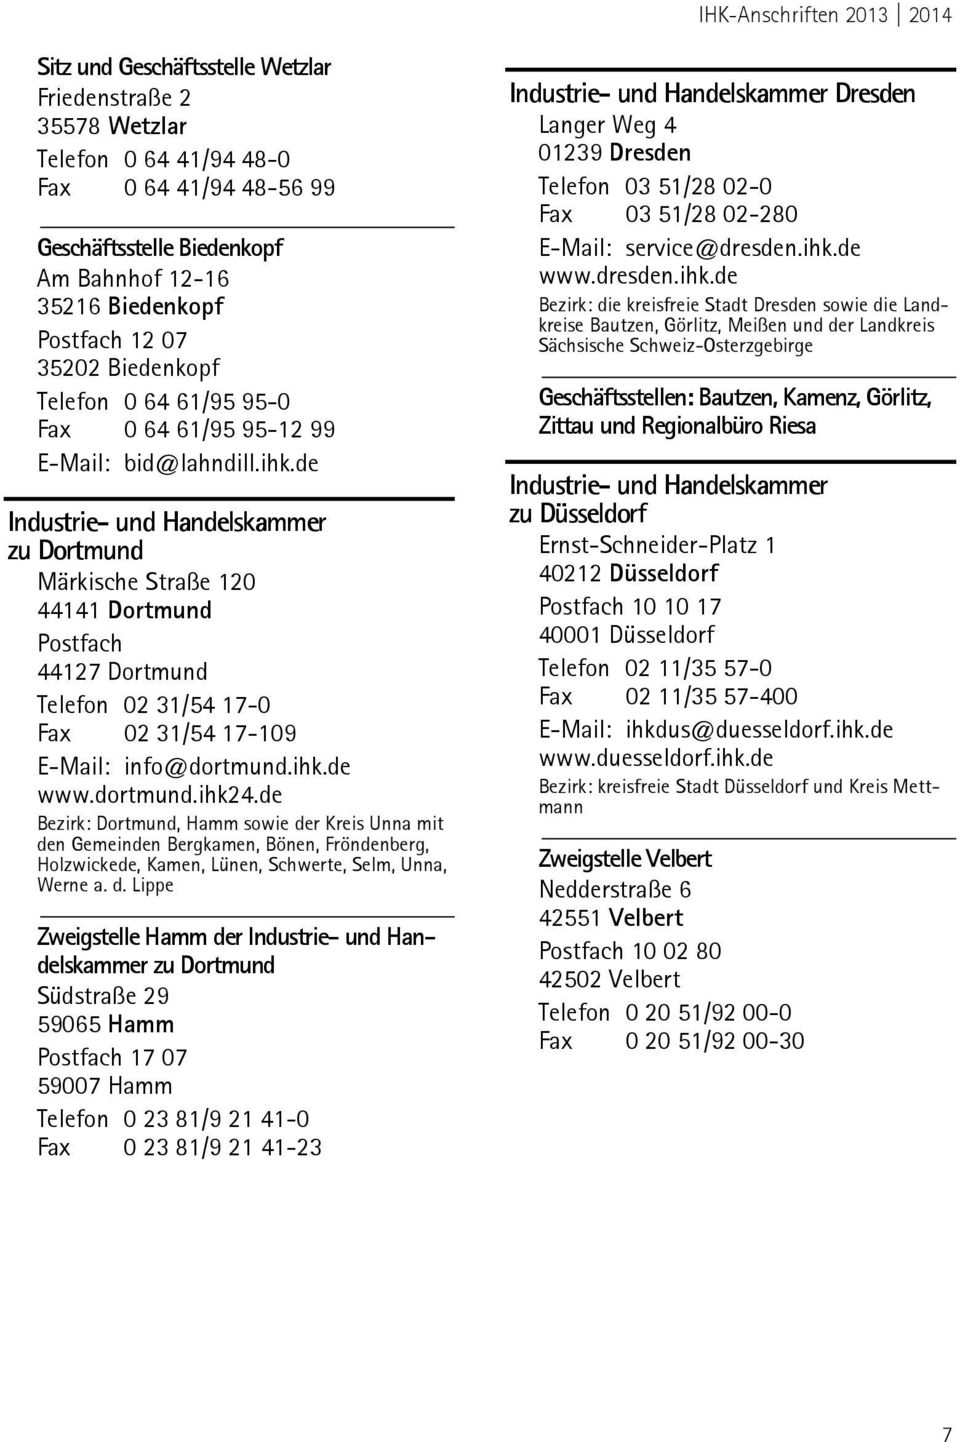 de zu Dortmund Märkische Straße 120 44141 Dortmund Postfach 44127 Dortmund Telefon 02 31/54 17-0 Fax 02 31/54 17-109 E-Mail: info@dortmund.ihk.de www.dortmund.ihk24.